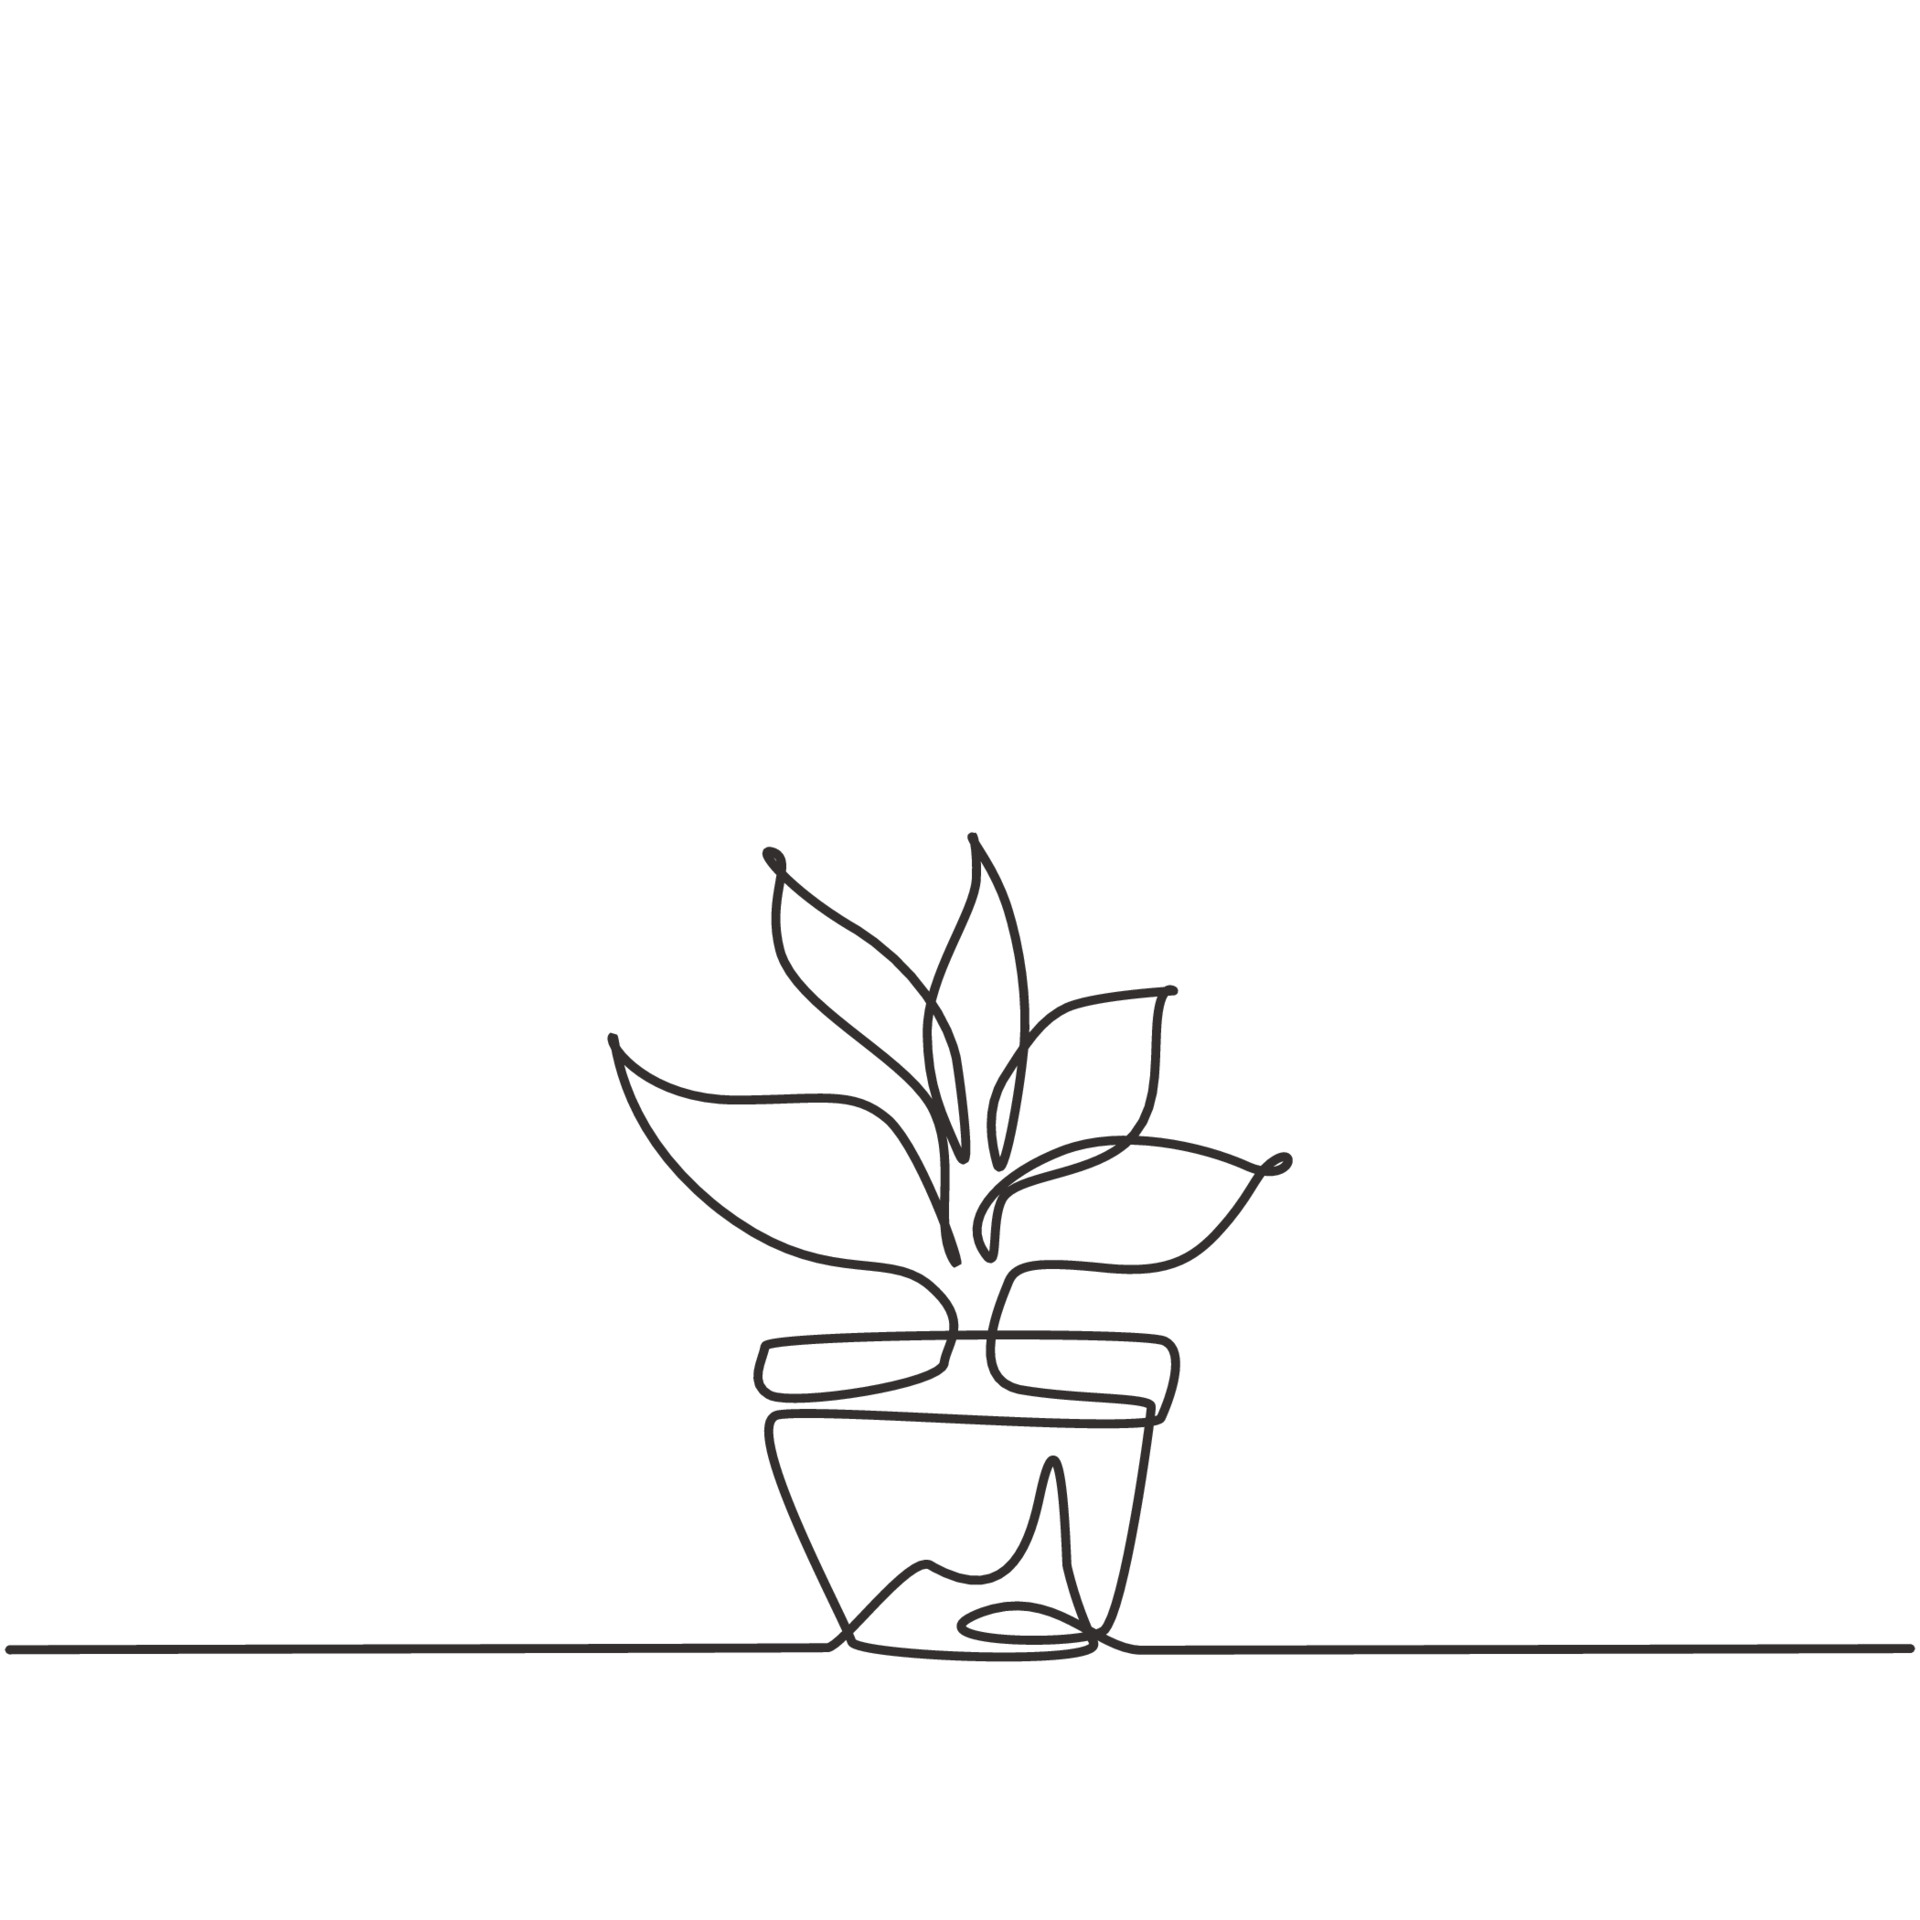 Las plantas en macetas de dibujo continuo de una línea con cinco hojas en  crecimiento se utilizan para plantas ornamentales. plantas ornamentales para  embellecer el salón. Ilustración gráfica de vector de diseño